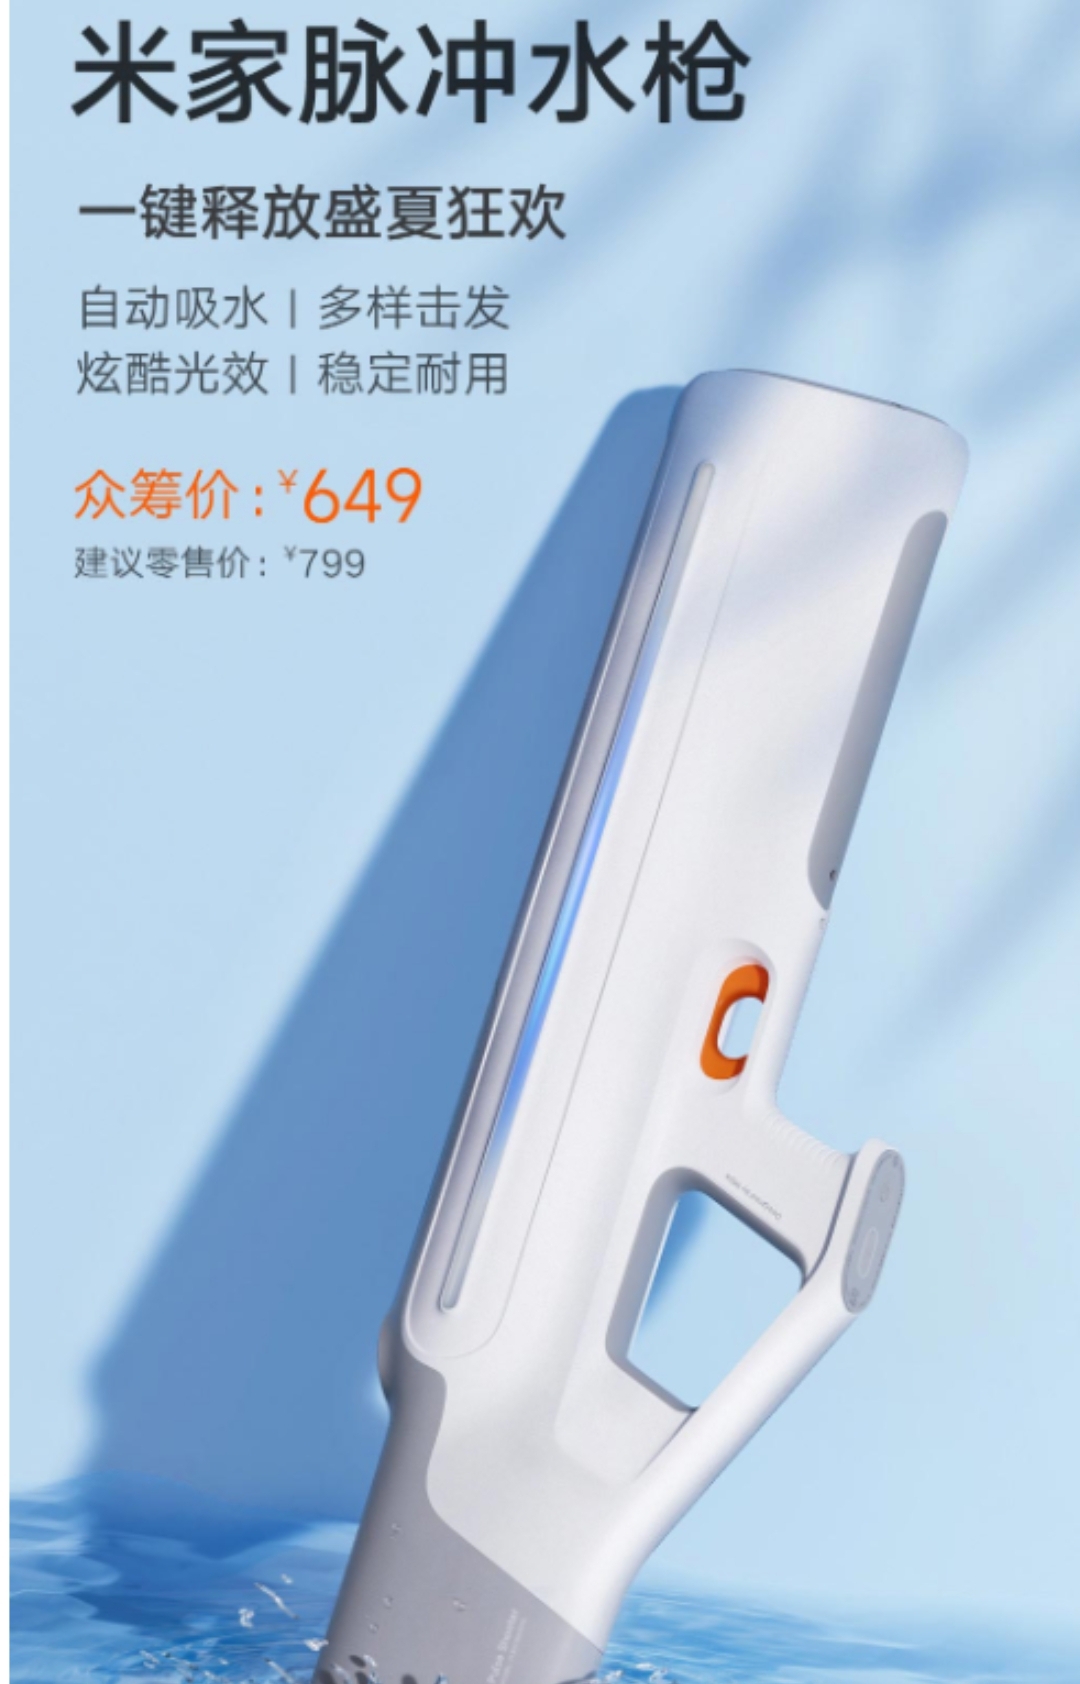 Xiaomi gun 2